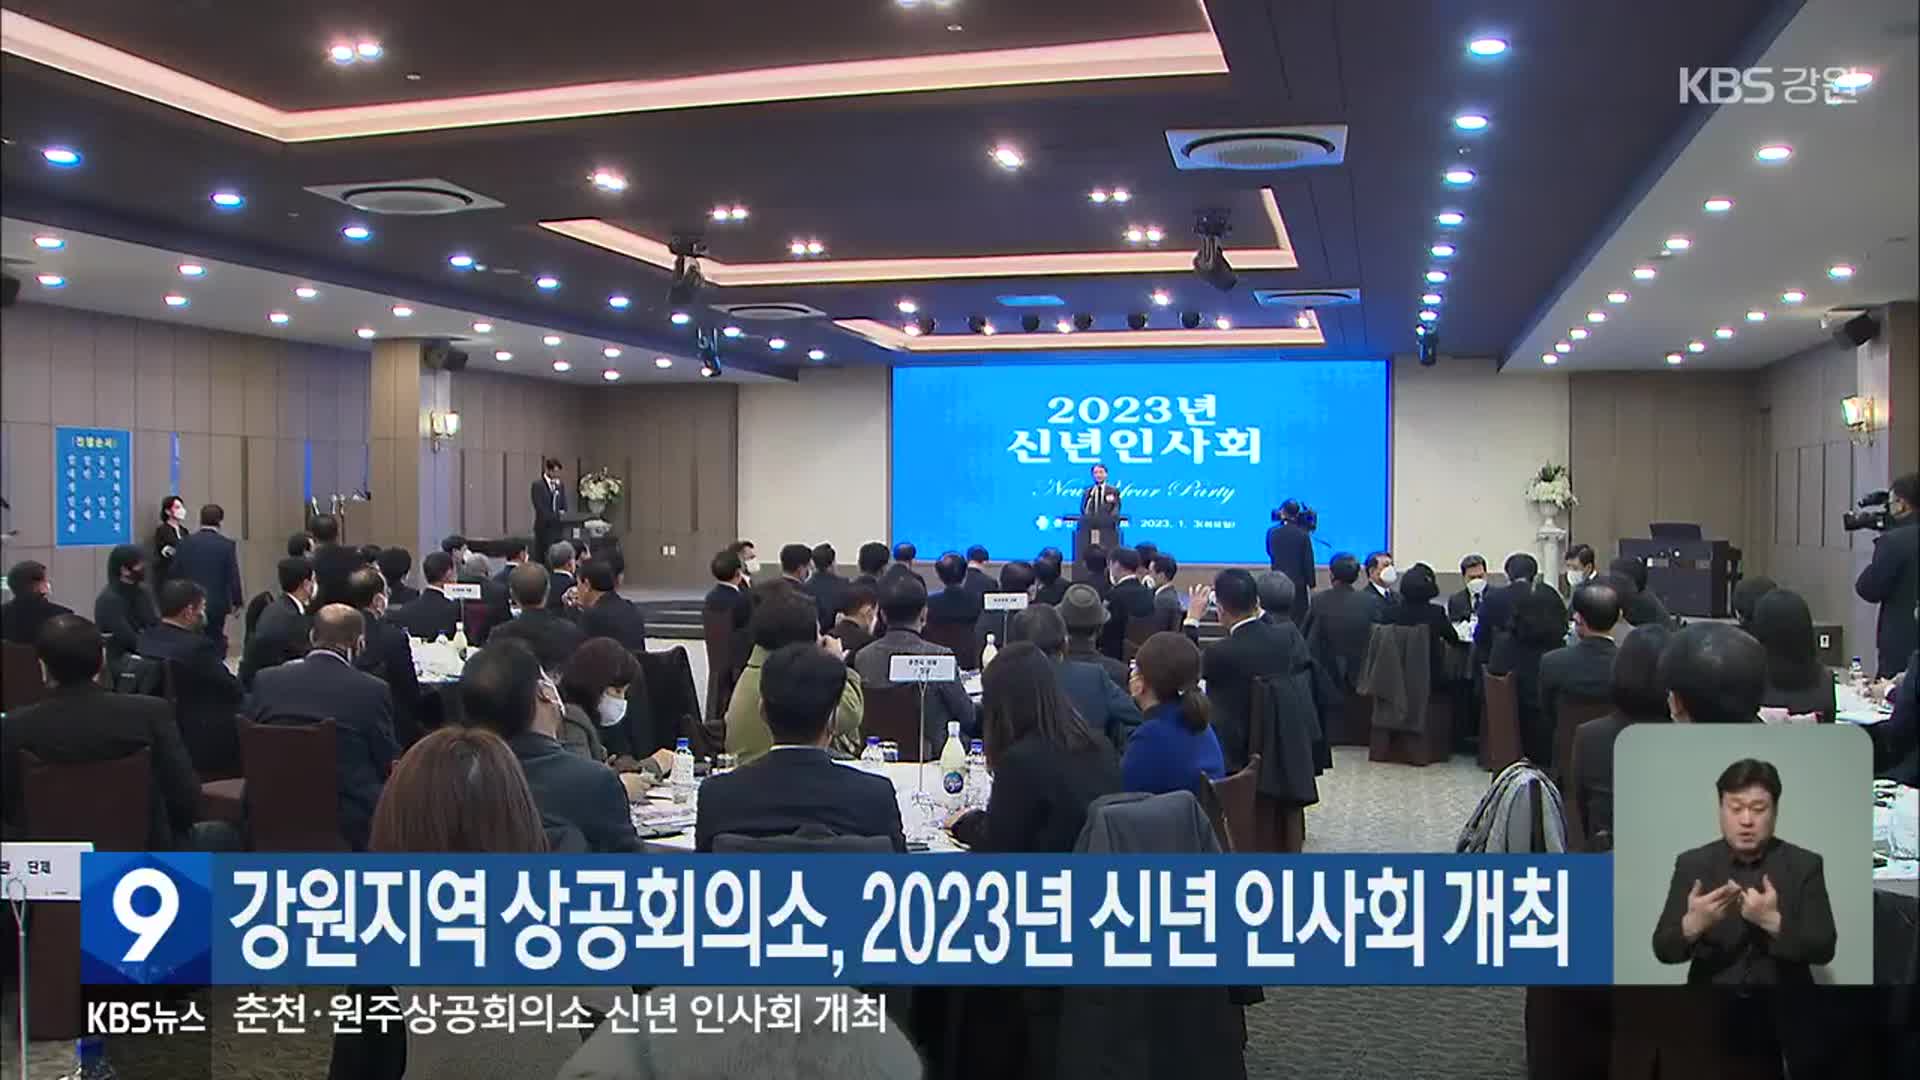 강원지역 상공회의소, 2023년 신년 인사회 개최